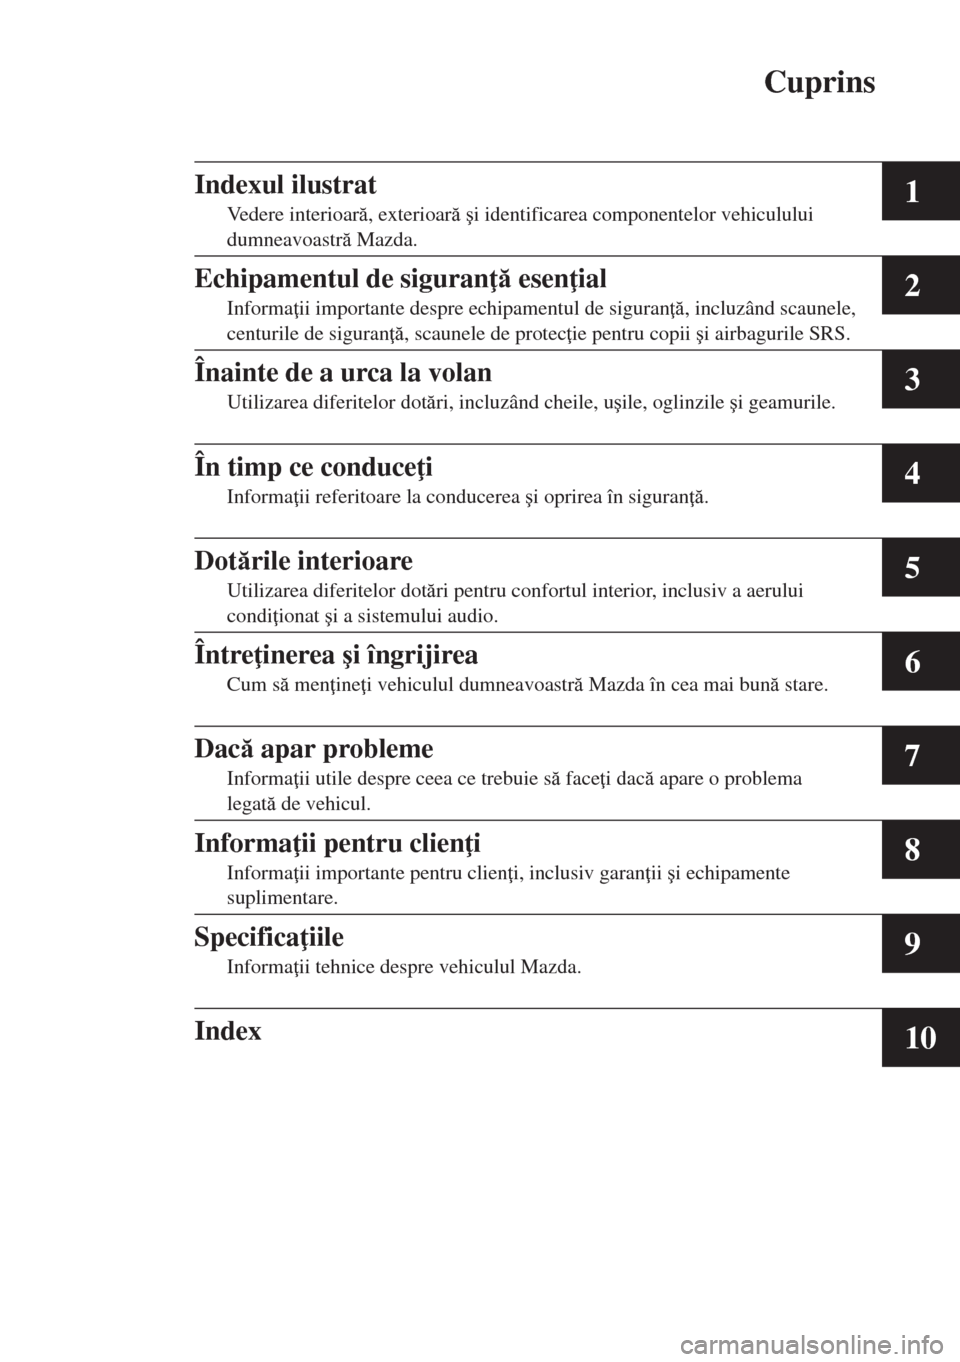 MAZDA MODEL CX-5 2015  Manualul de utilizare (in Romanian) Cuprins
1
2
3
4
5
6
7
8
9
10
Indexul ilustrat
Vedere interioar, exterioar �úi identificarea componentelor vehiculului 
dumneavoastr Mazda.
Echipamentul de siguran  esen ial
Informa ii impo